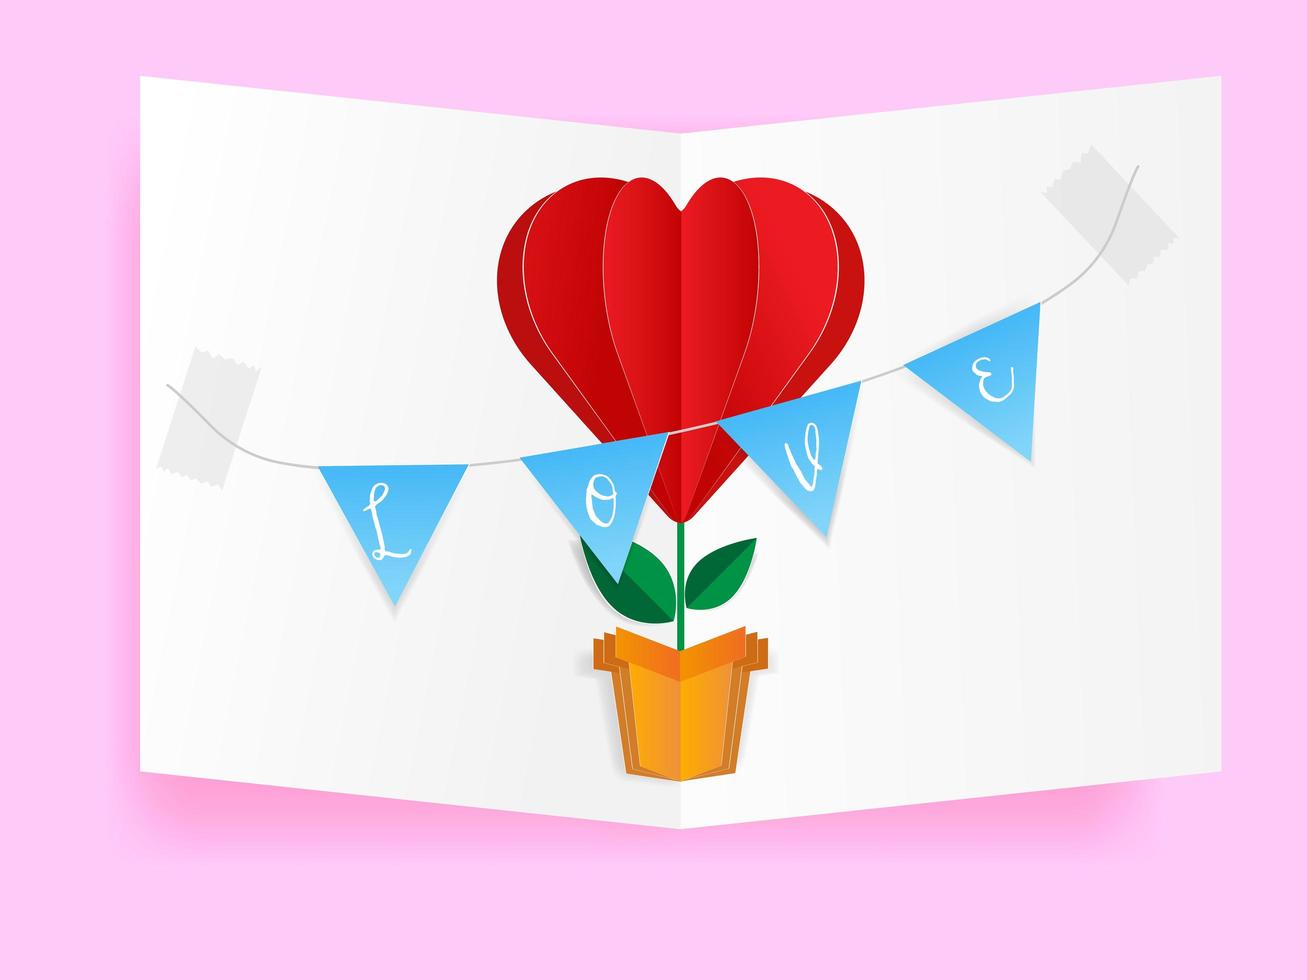 hjärtformad blomma för alla hjärtans gratulationskort, pappershantverk vektor